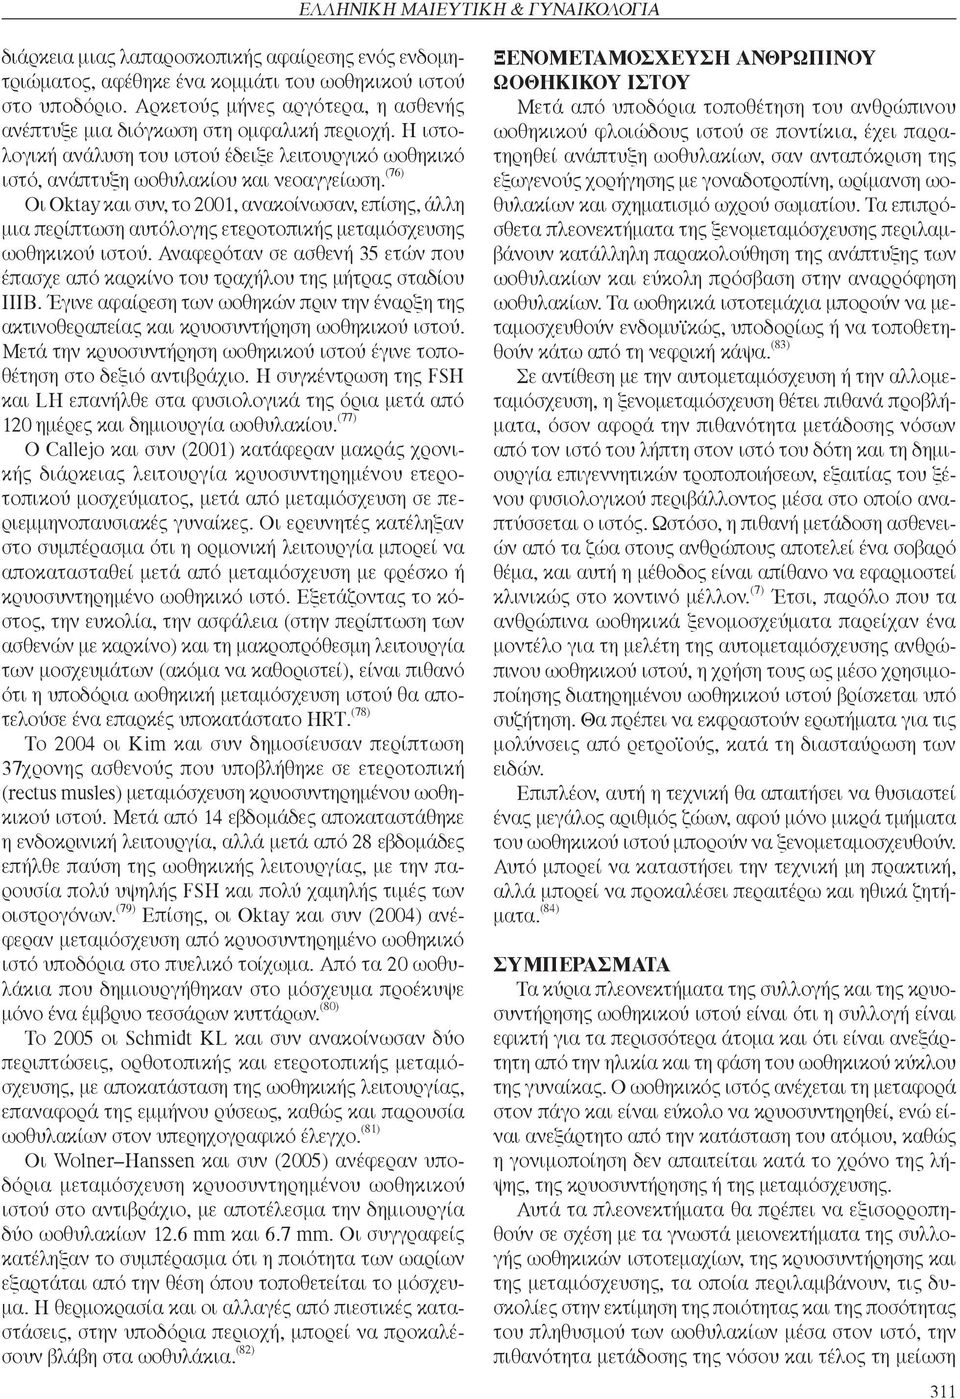 (76) Οι Oktay και συν, το 2001, ανακοίνωσαν, επίσης, άλλη μια περίπτωση αυτόλογης ετεροτοπικής μεταμόσχευσης ωοθηκικού ιστού.